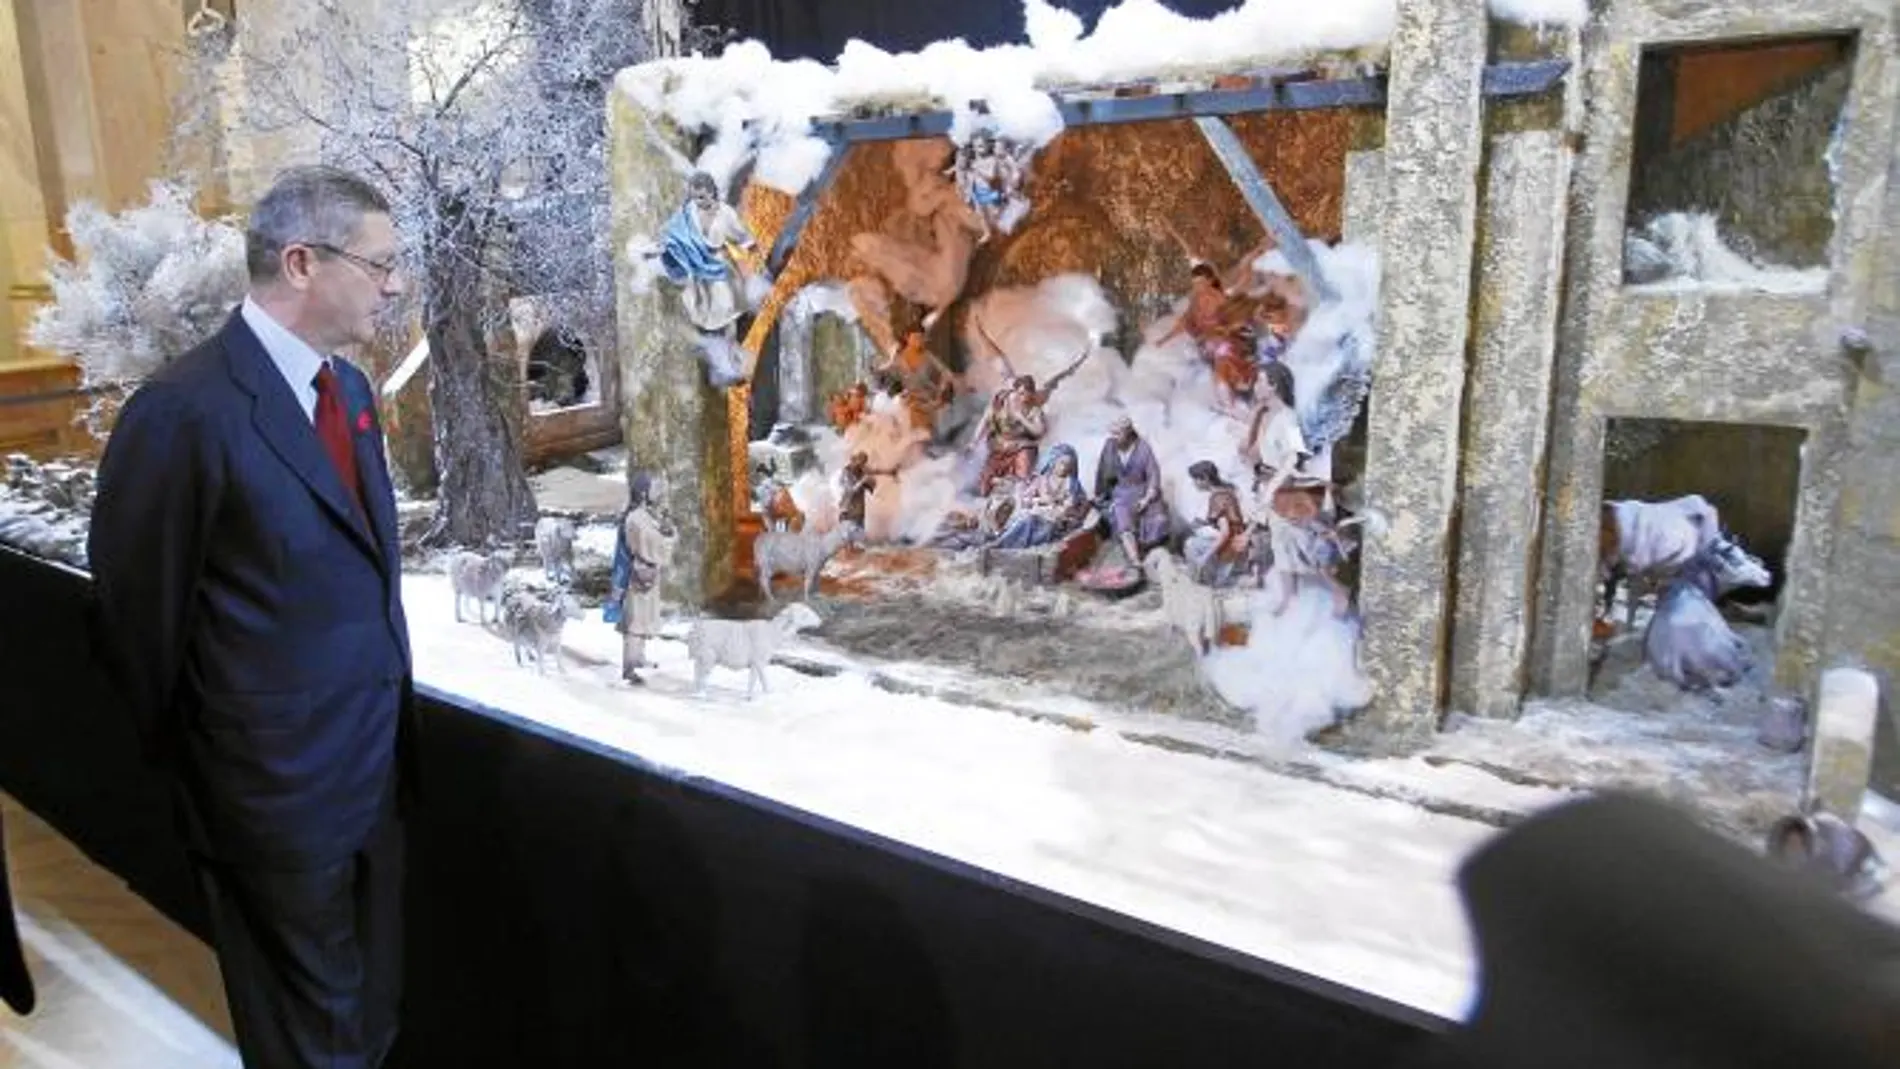 el belén «salado» del ayuntamiento de madrid se abrió ayer al público en el Palacio de Cibeles. El centro cultural alberga las más de 200 figuras y un paisaje nevado hecho con sal